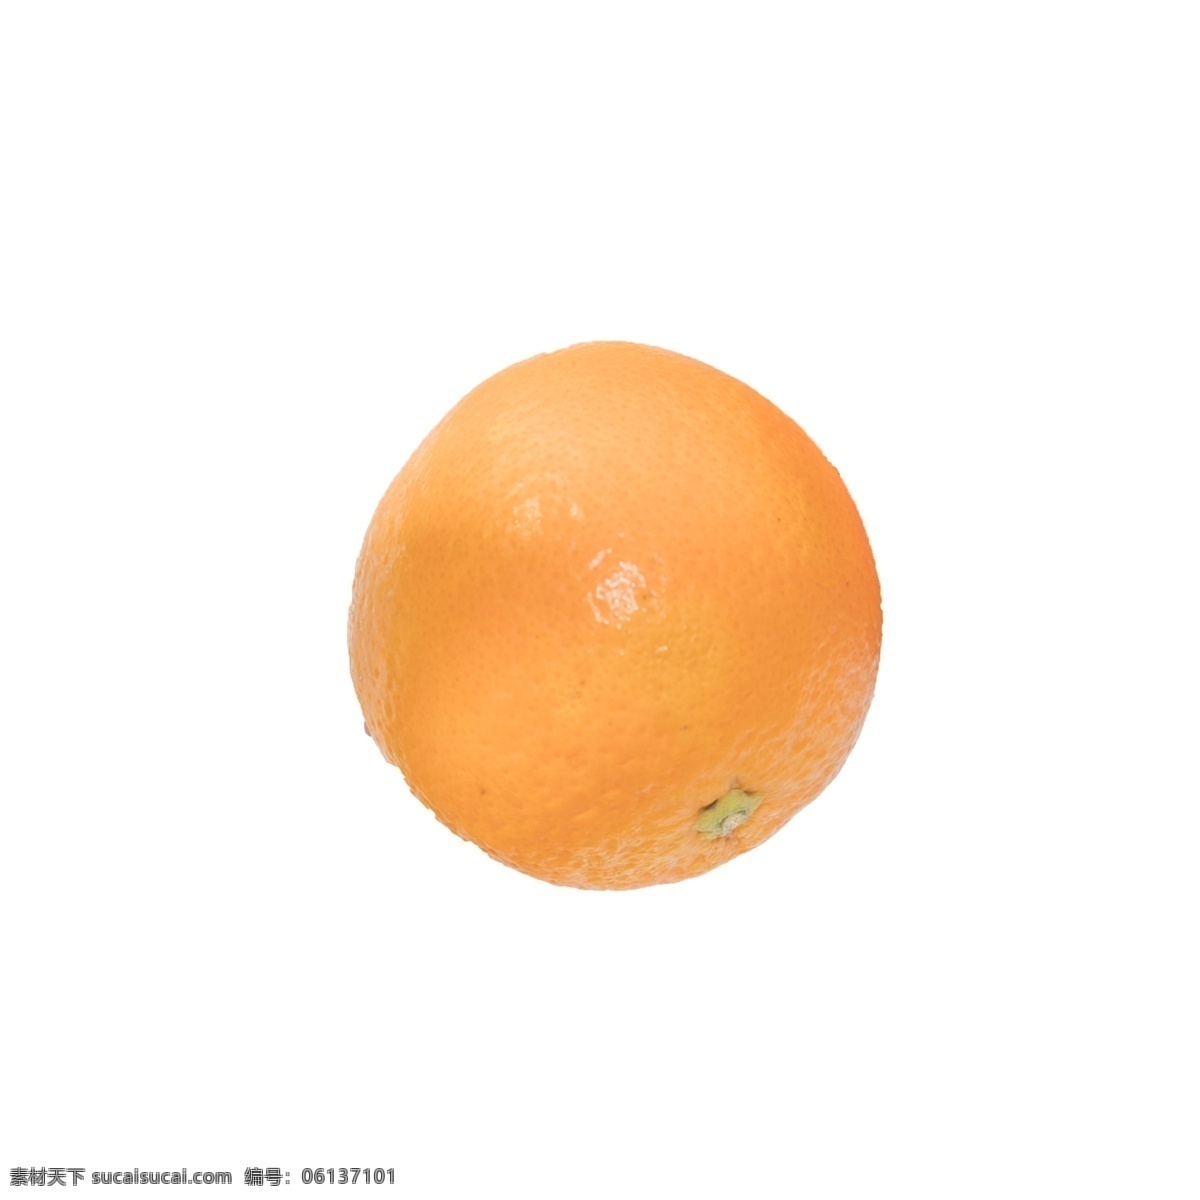 一个 橙子 免 抠 一个橙子 甜食 水果 剥皮水果类 可榨汁水果类 一个橙子免抠 免抠水果 新鲜的橙子